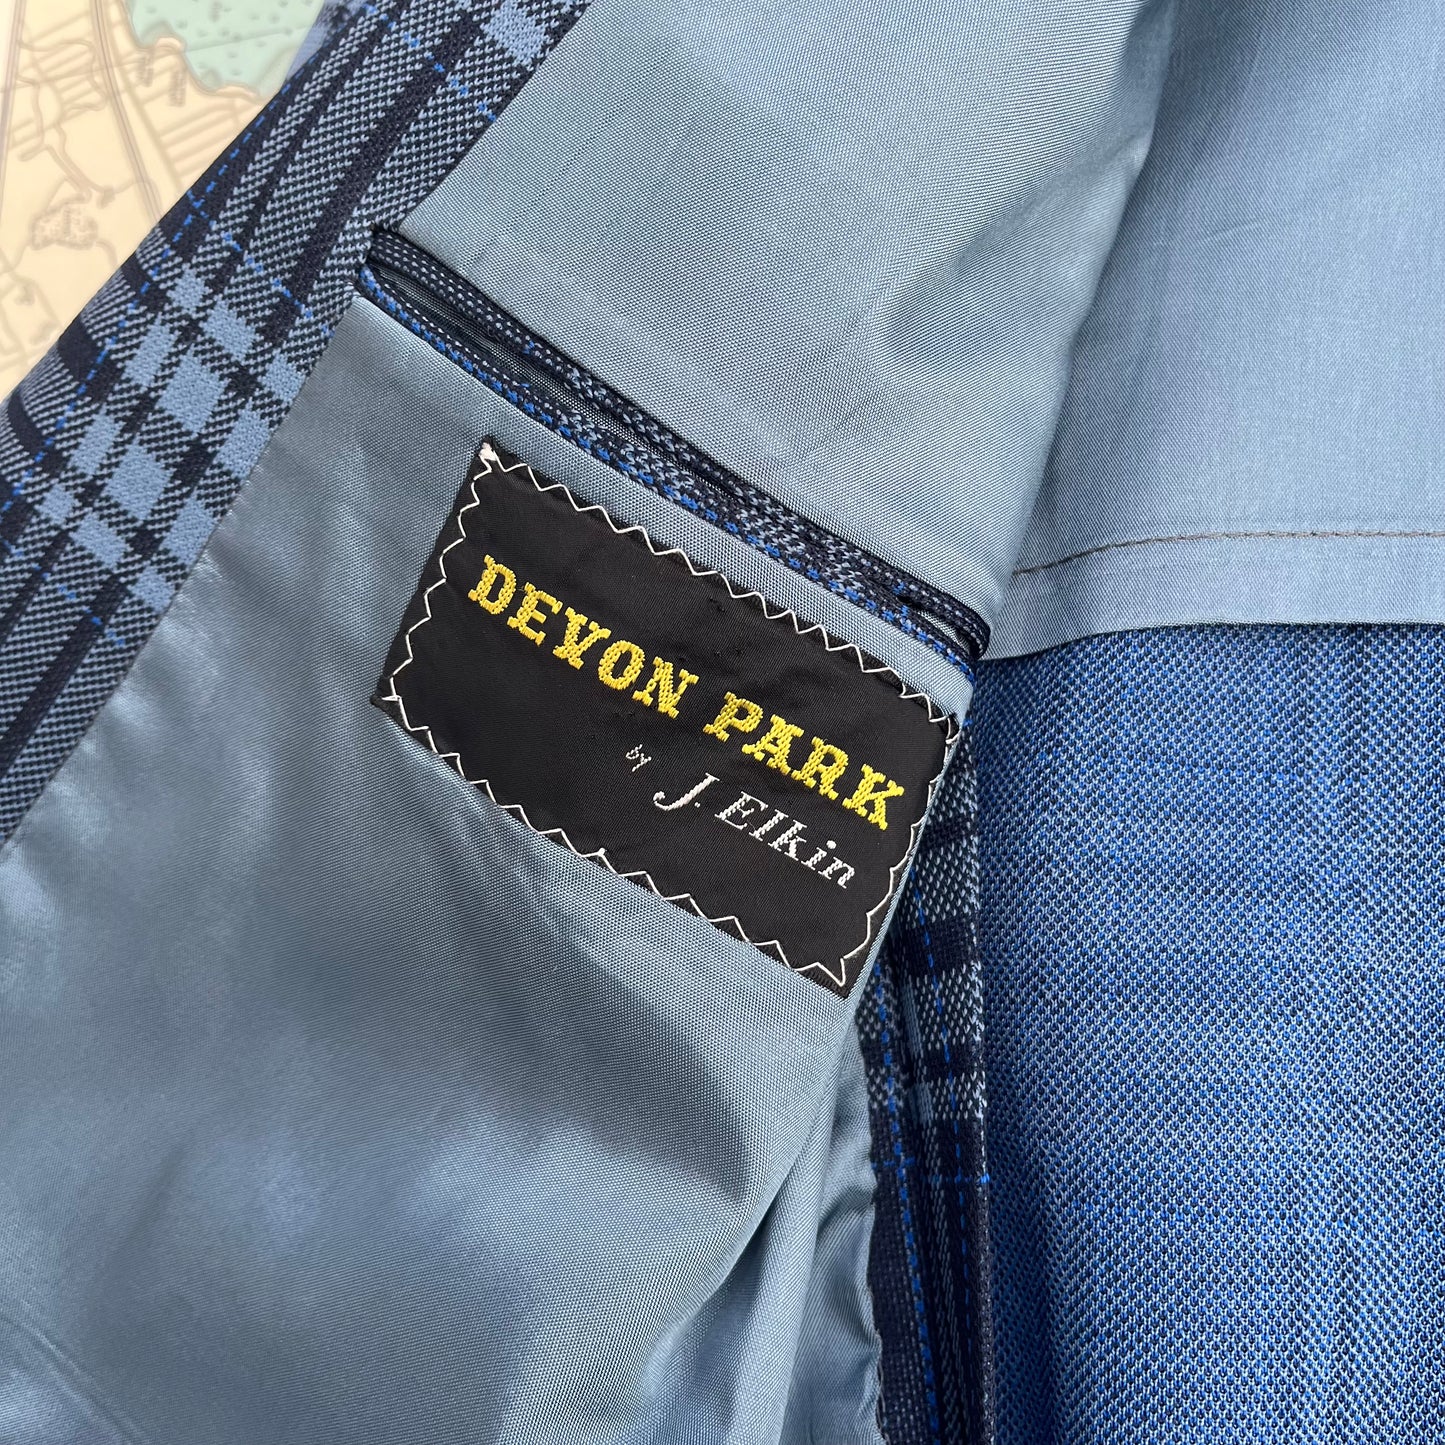 Vintage Blue Plaid Devon Park Suit Jacket